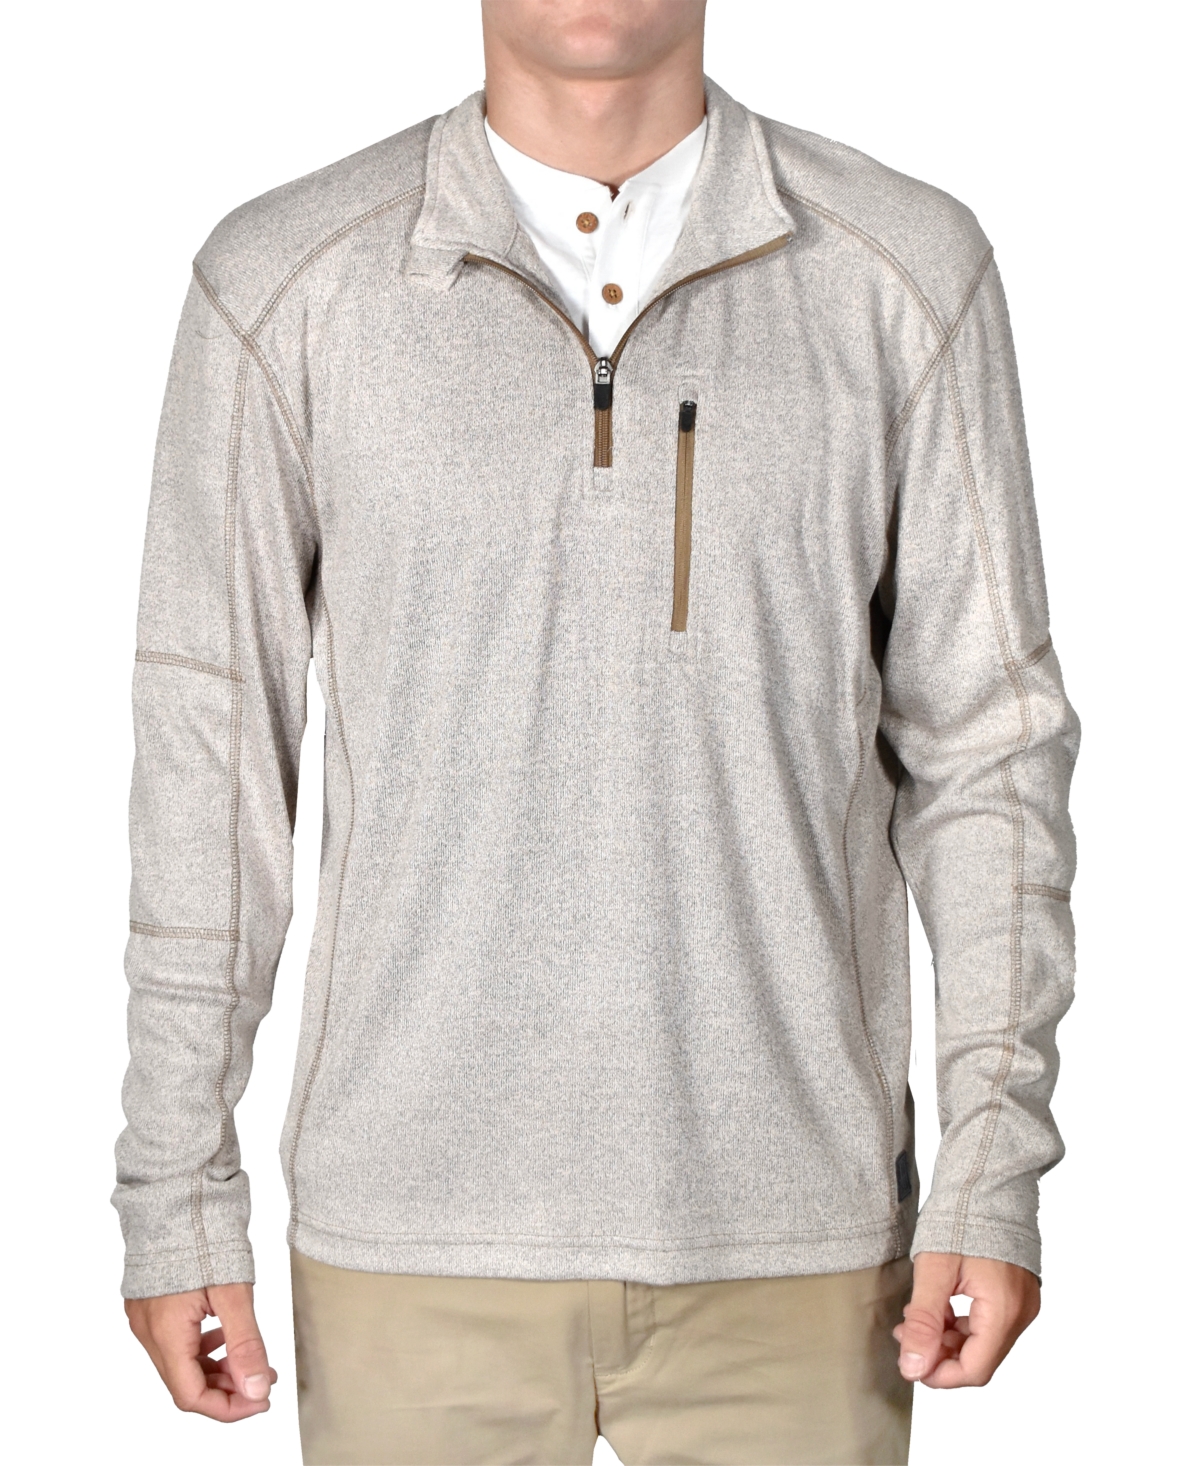 Men's Micro-Rib Quarter-Zip Ribbed Sweater - Lt Grey